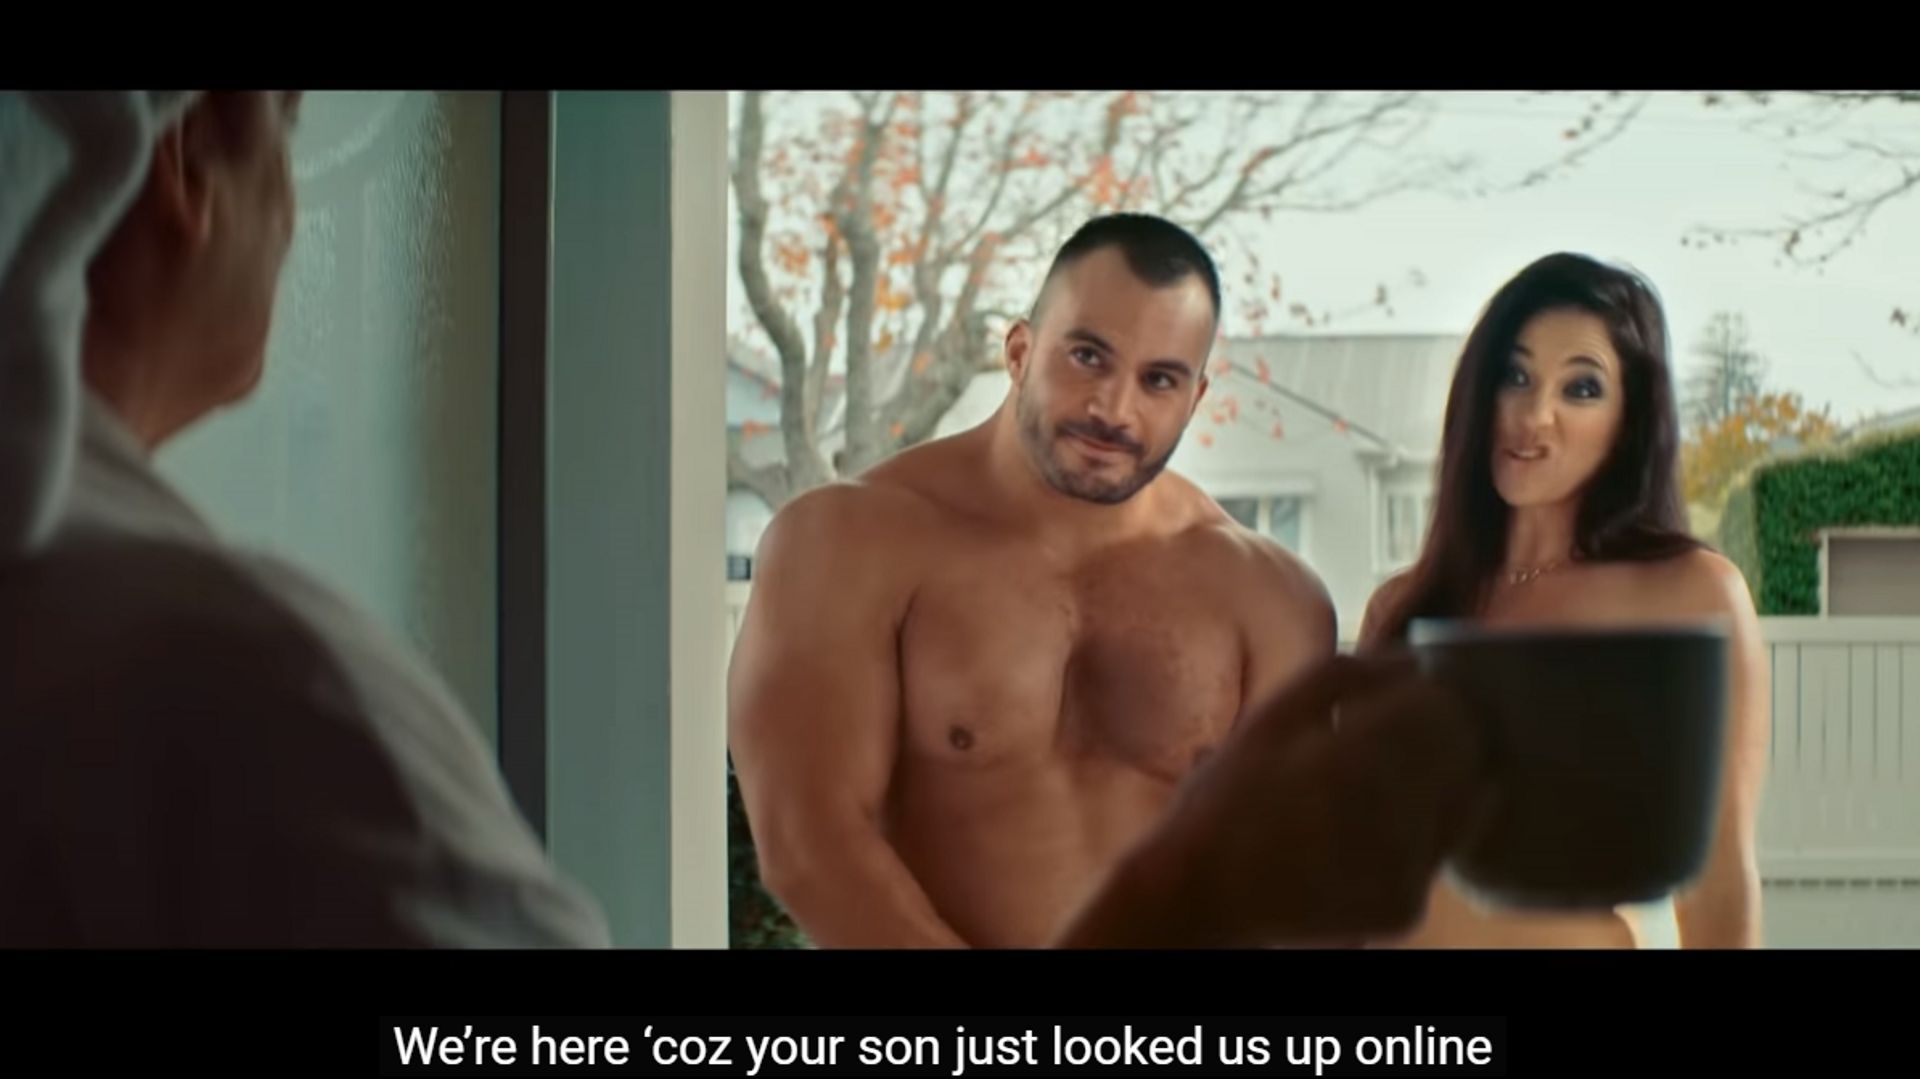 Deux acteurs pornos nus sur le pas de la porte une campagne néo-zélandaise sur les dangers dinternet fait un tabac image